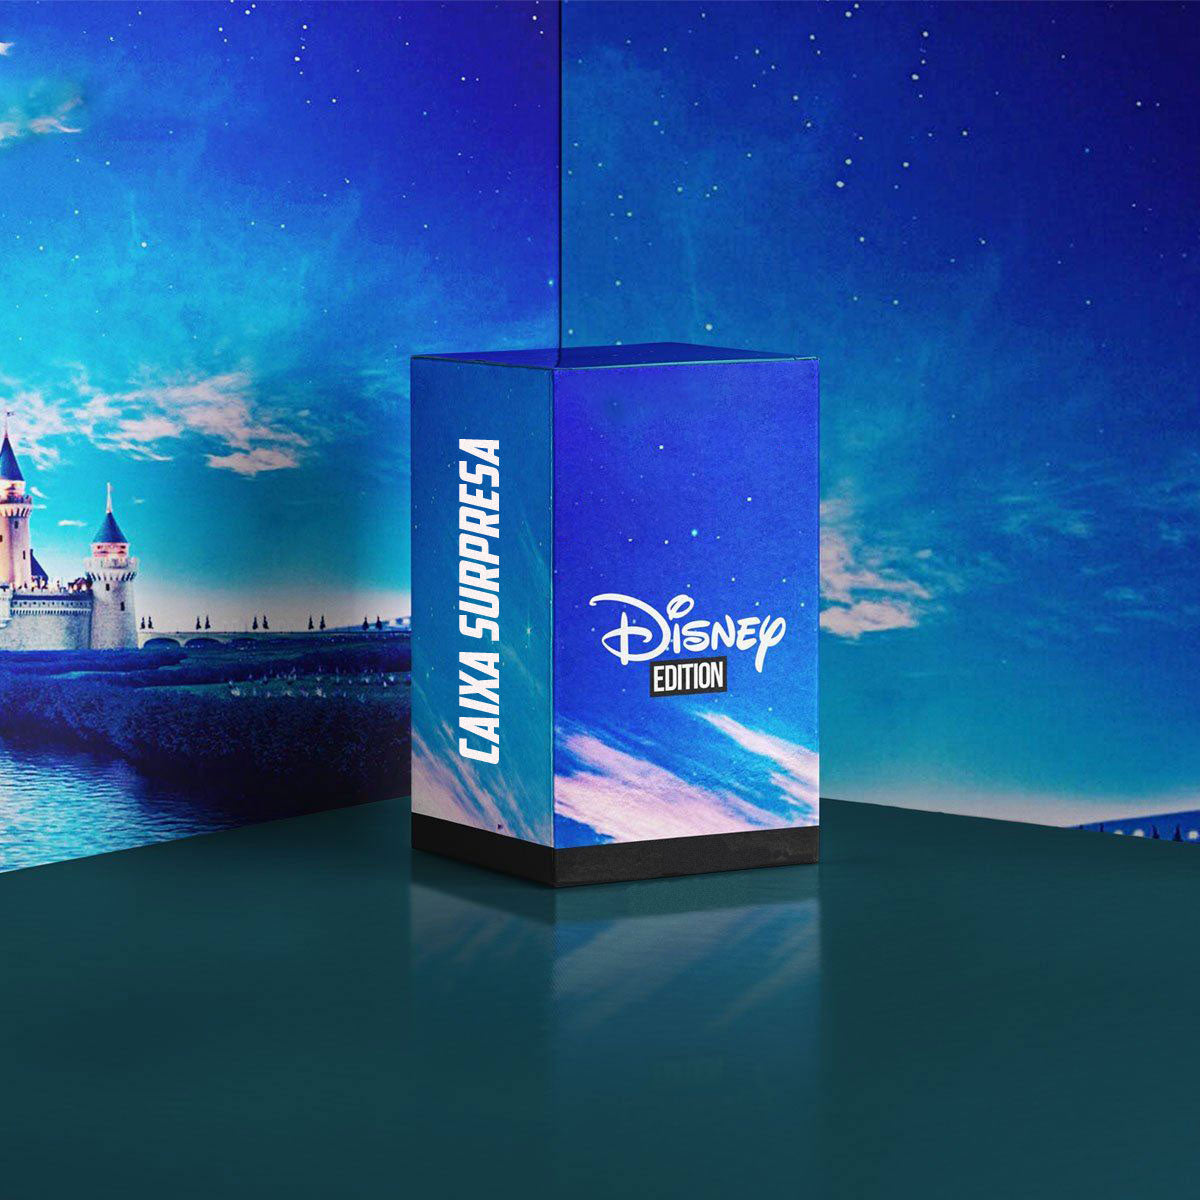 Caixa Surpresa - Disney Edition.